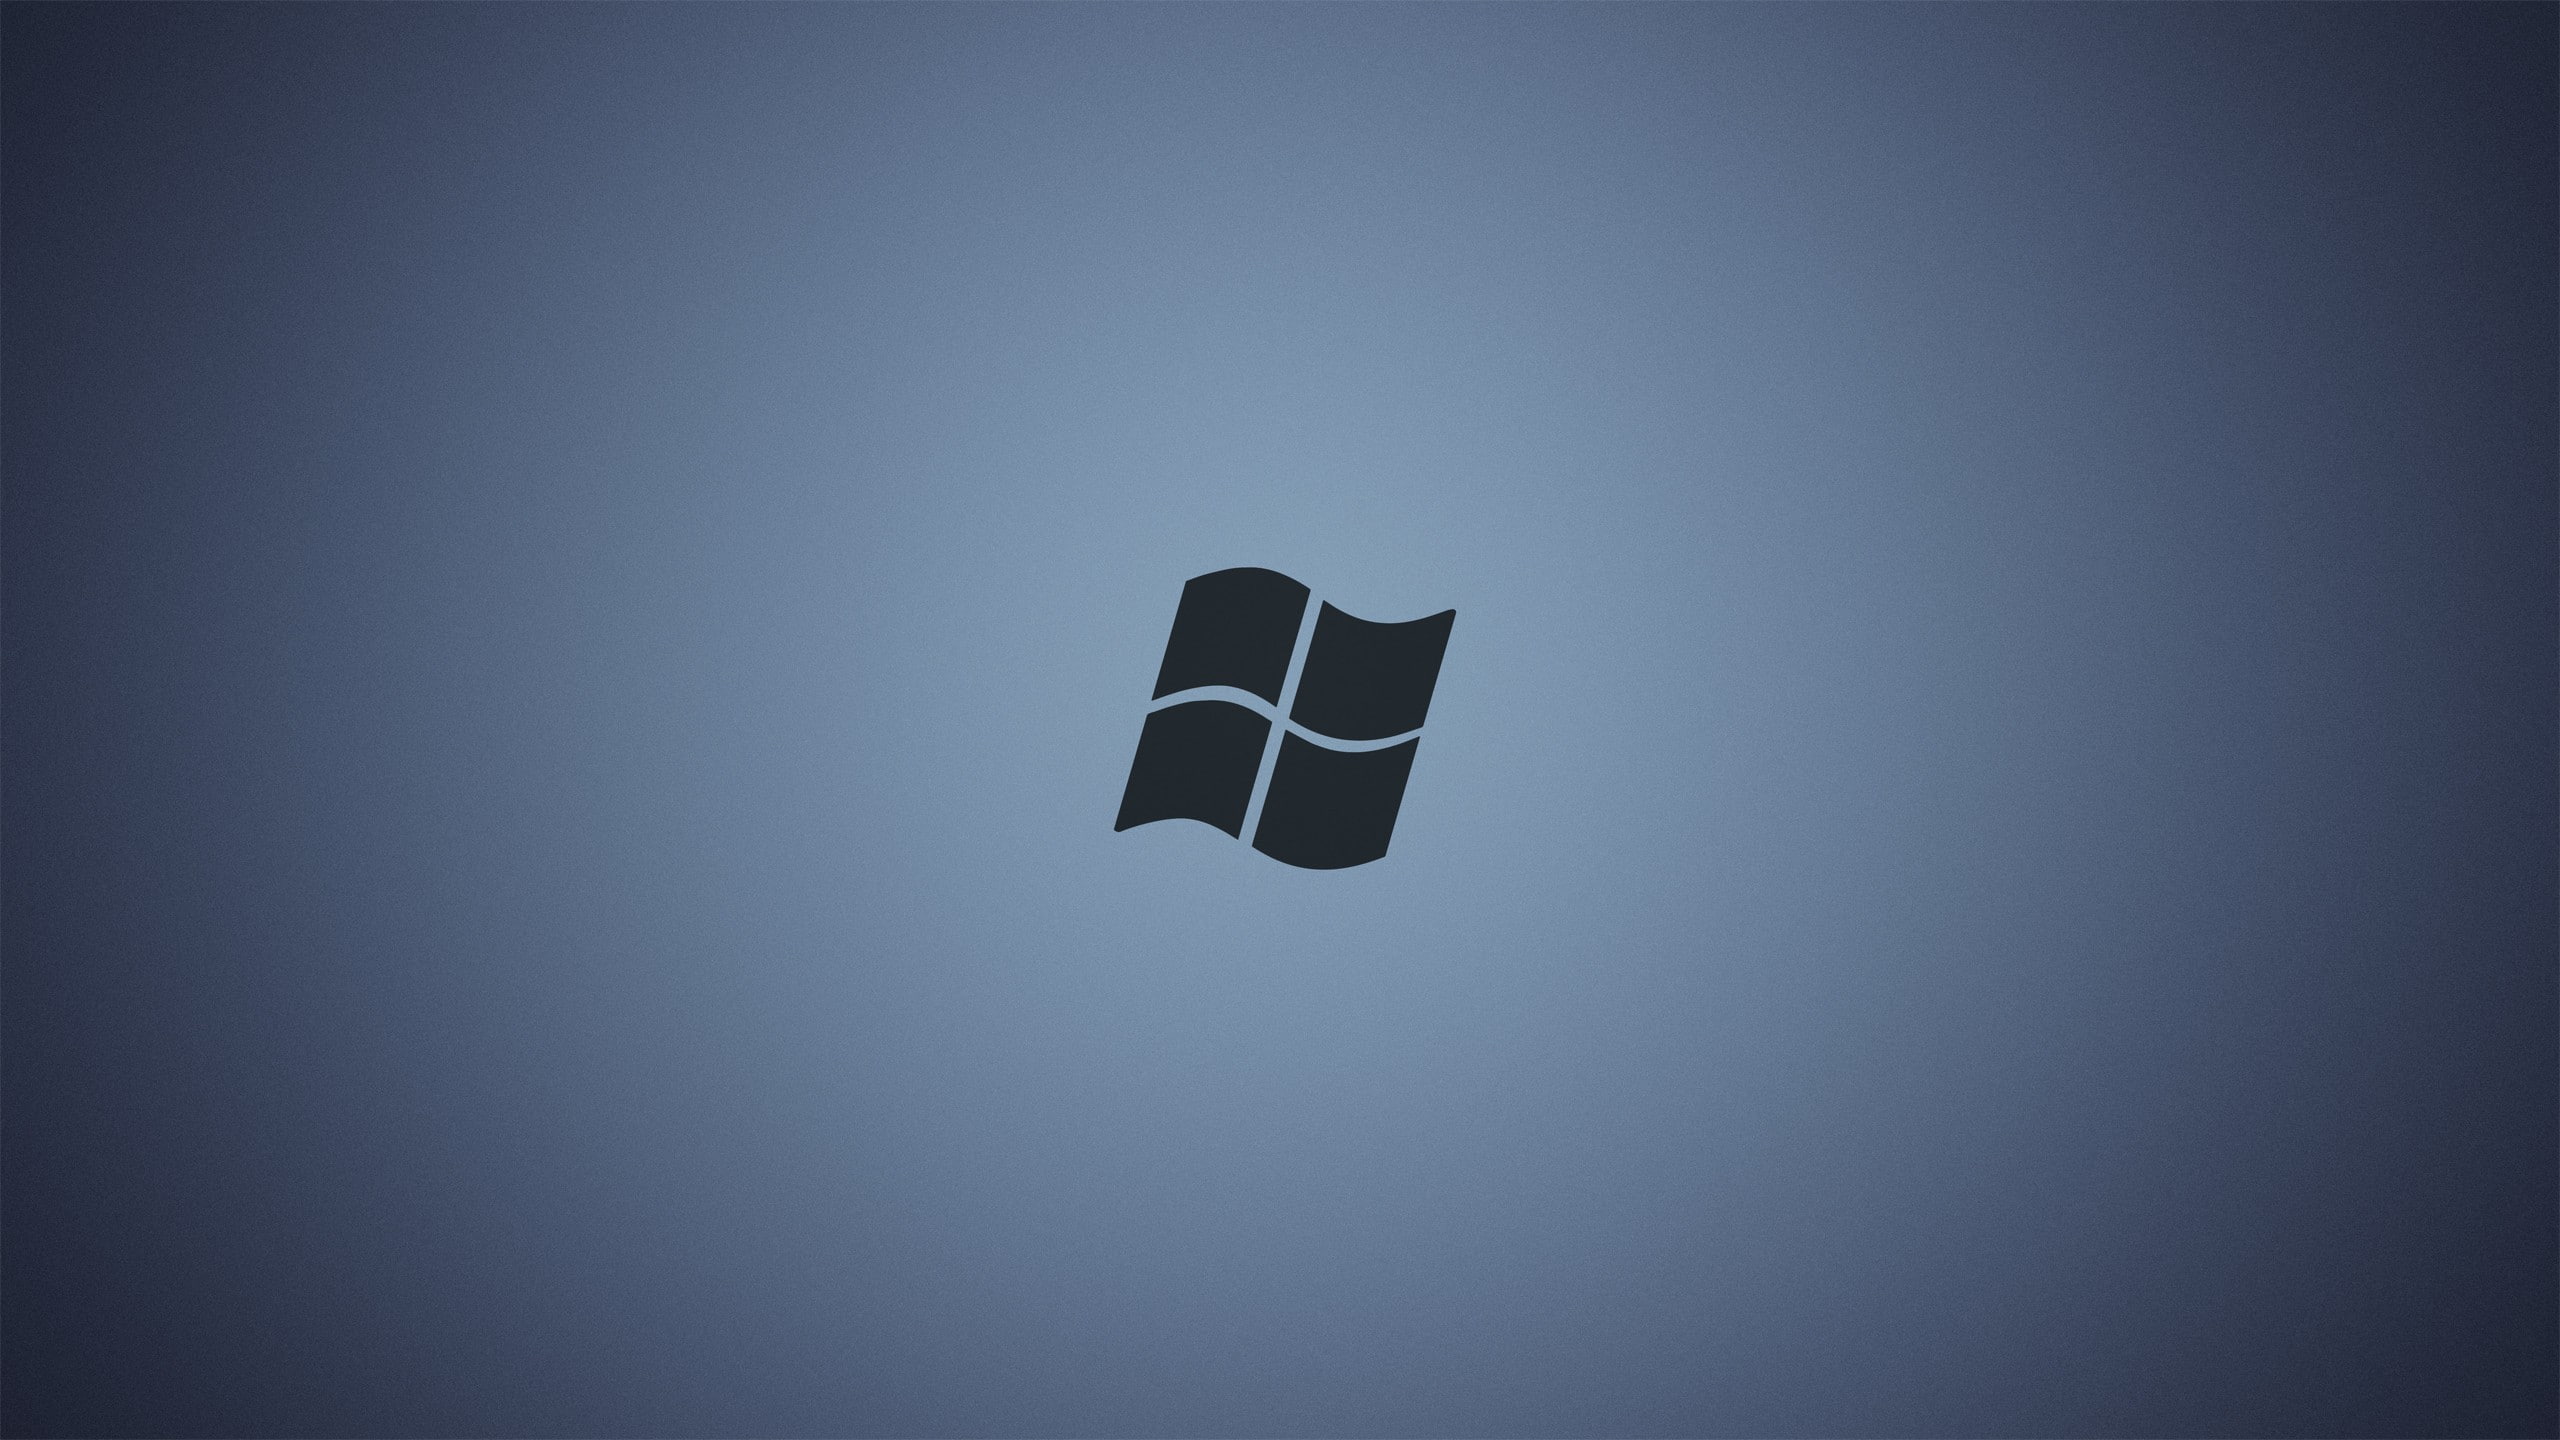 Windows 7, Windows 8, Microsoft Windows, Windows 10, minimalism